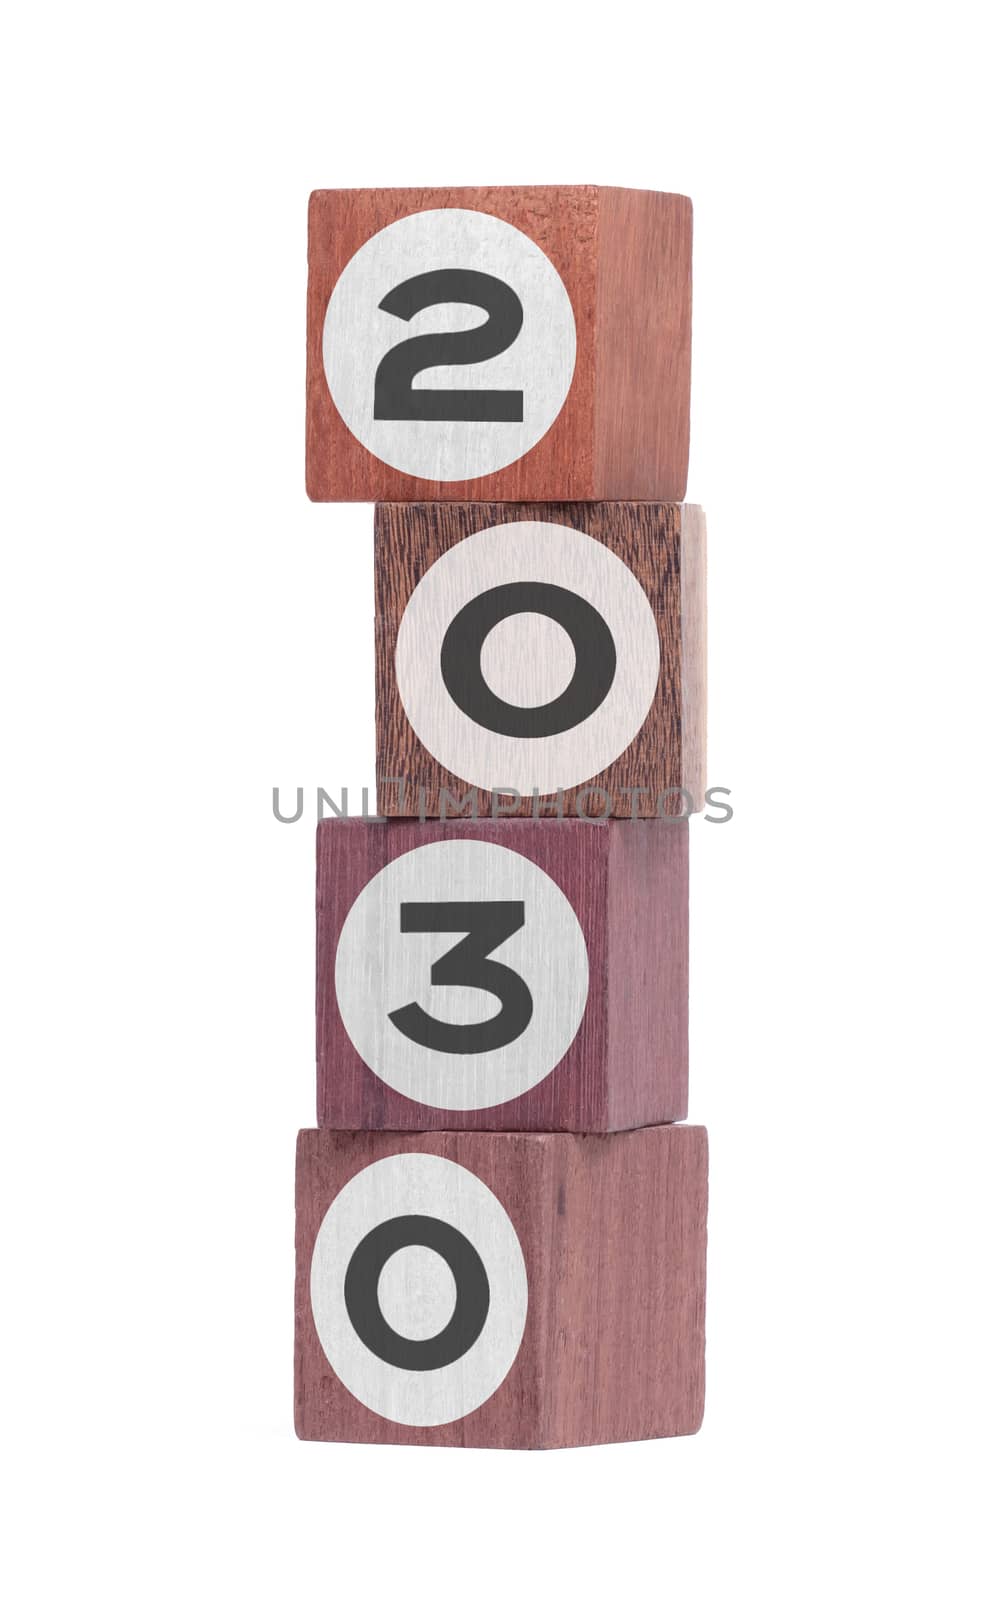 Four isolated hardwood toy blocks on white, saying 2030